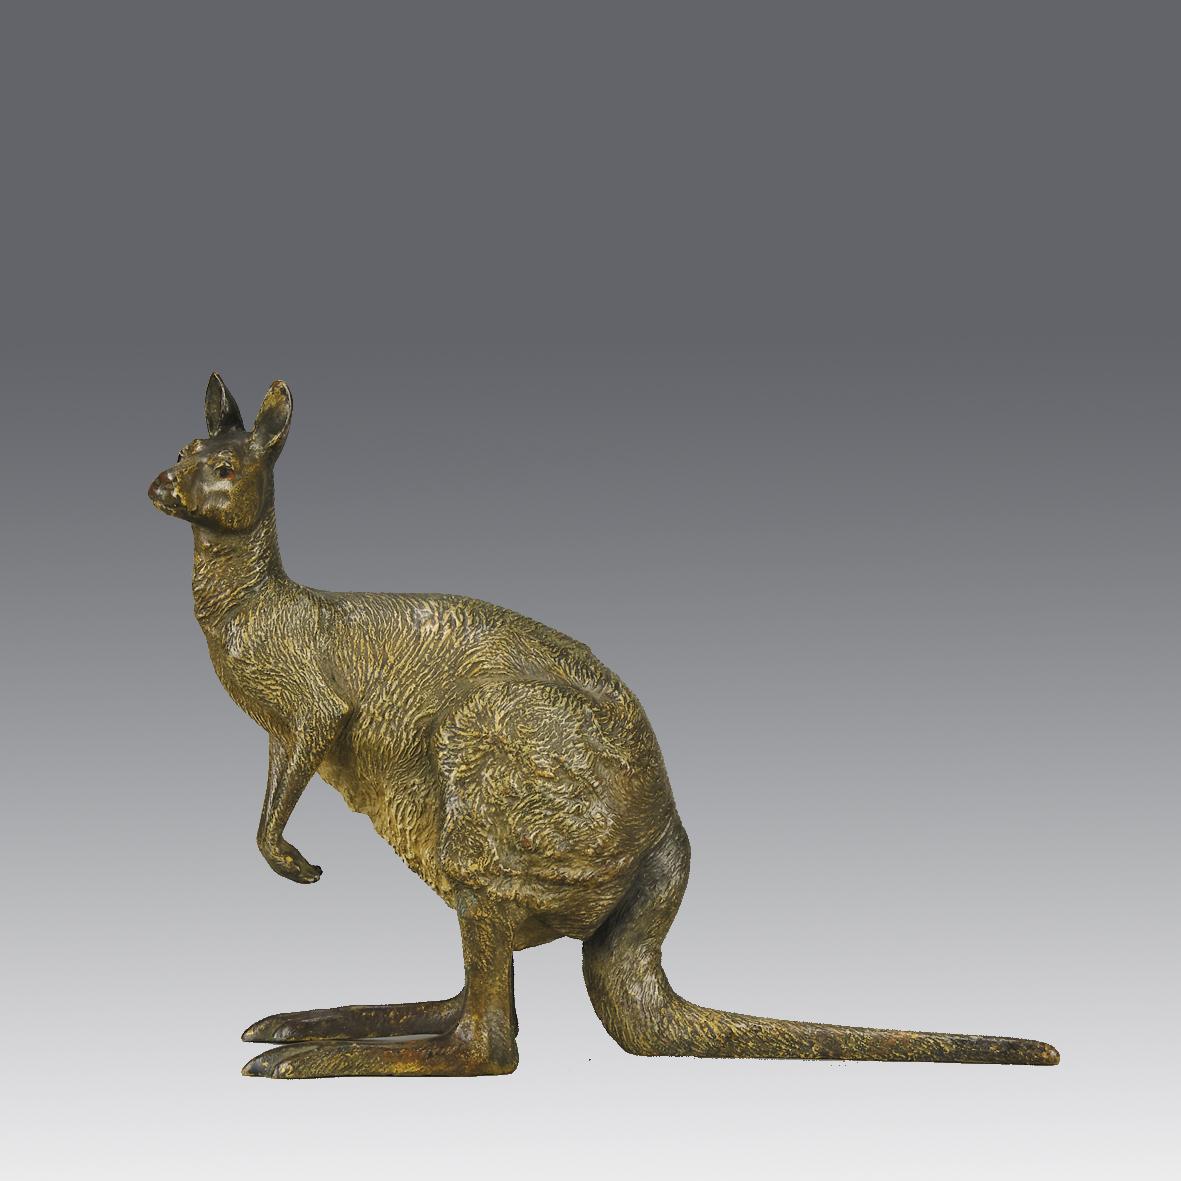 Excellente étude en bronze autrichien du début du 20e siècle représentant un kangourou debout, avec de très beaux détails de surface ciselés à la main et une bonne couleur naturaliste, signée avec le 